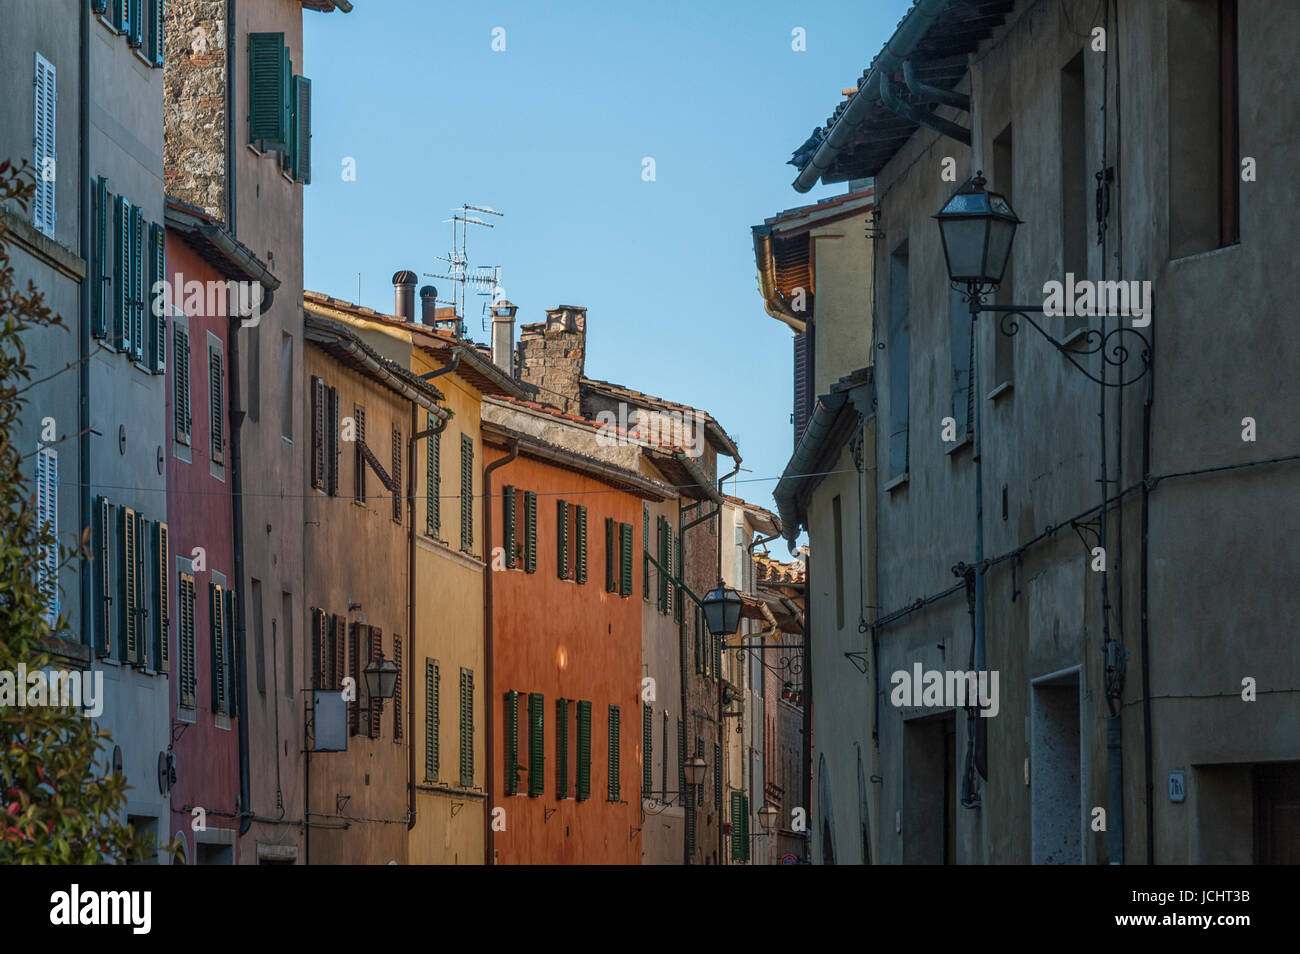 SAN QUIRICO D'ORCIA, ITALIE - 30 octobre 2016 - charmante ruelle de la ville de Pienza, Sienne, Val d'Orcia, Toscane - Italie Banque D'Images